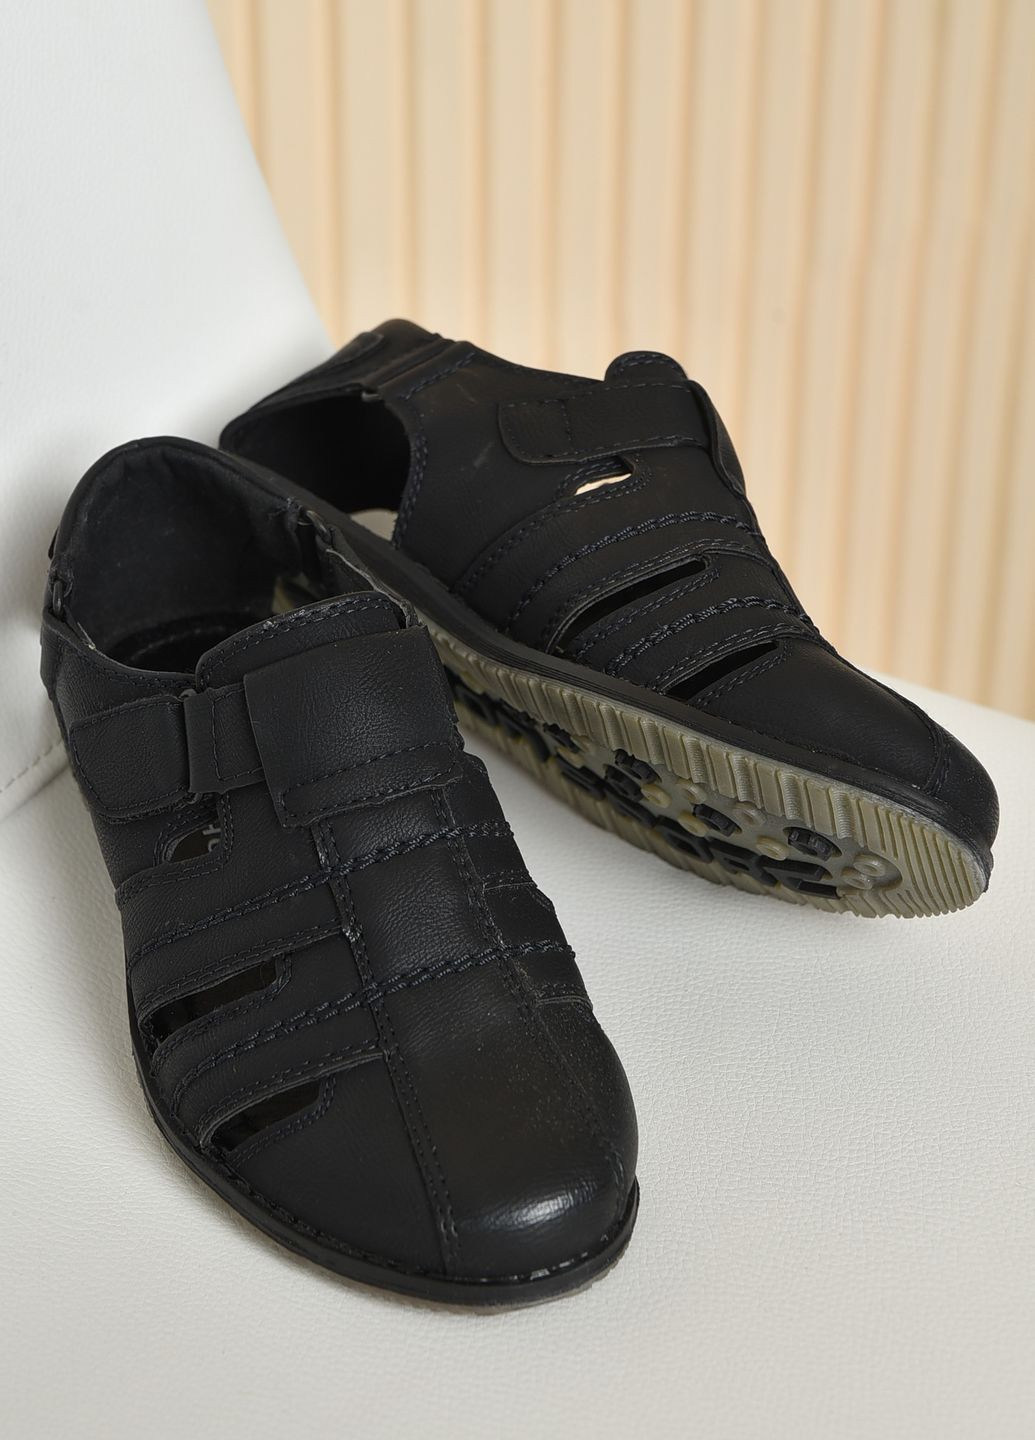 Черные туфли детские для мальчика черного цвета на липучке на липучке Let's Shop